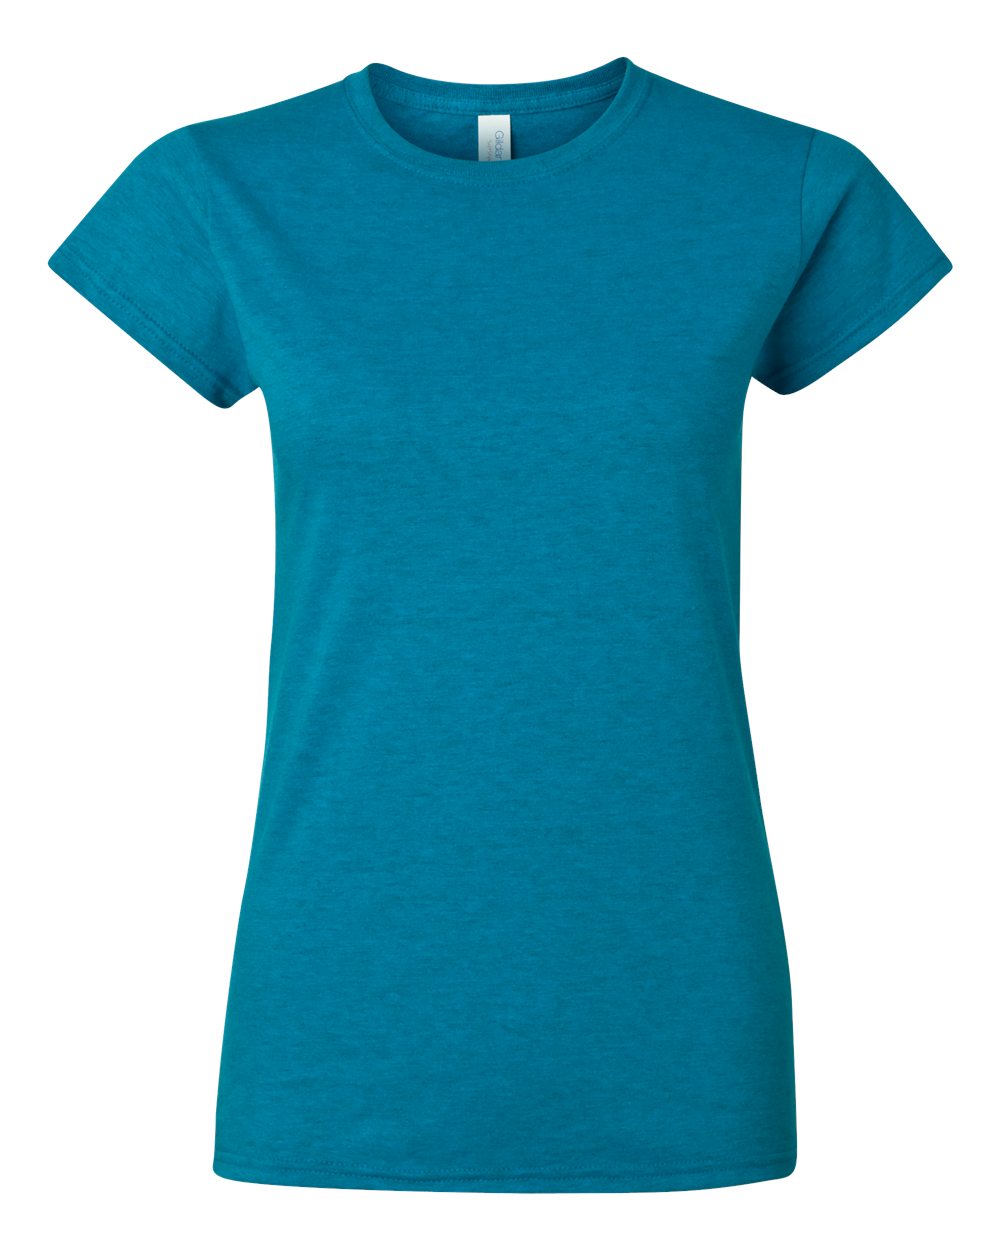 Gildan - Softstyle® Women’s T-Shirt - 64000L -S - 3XL